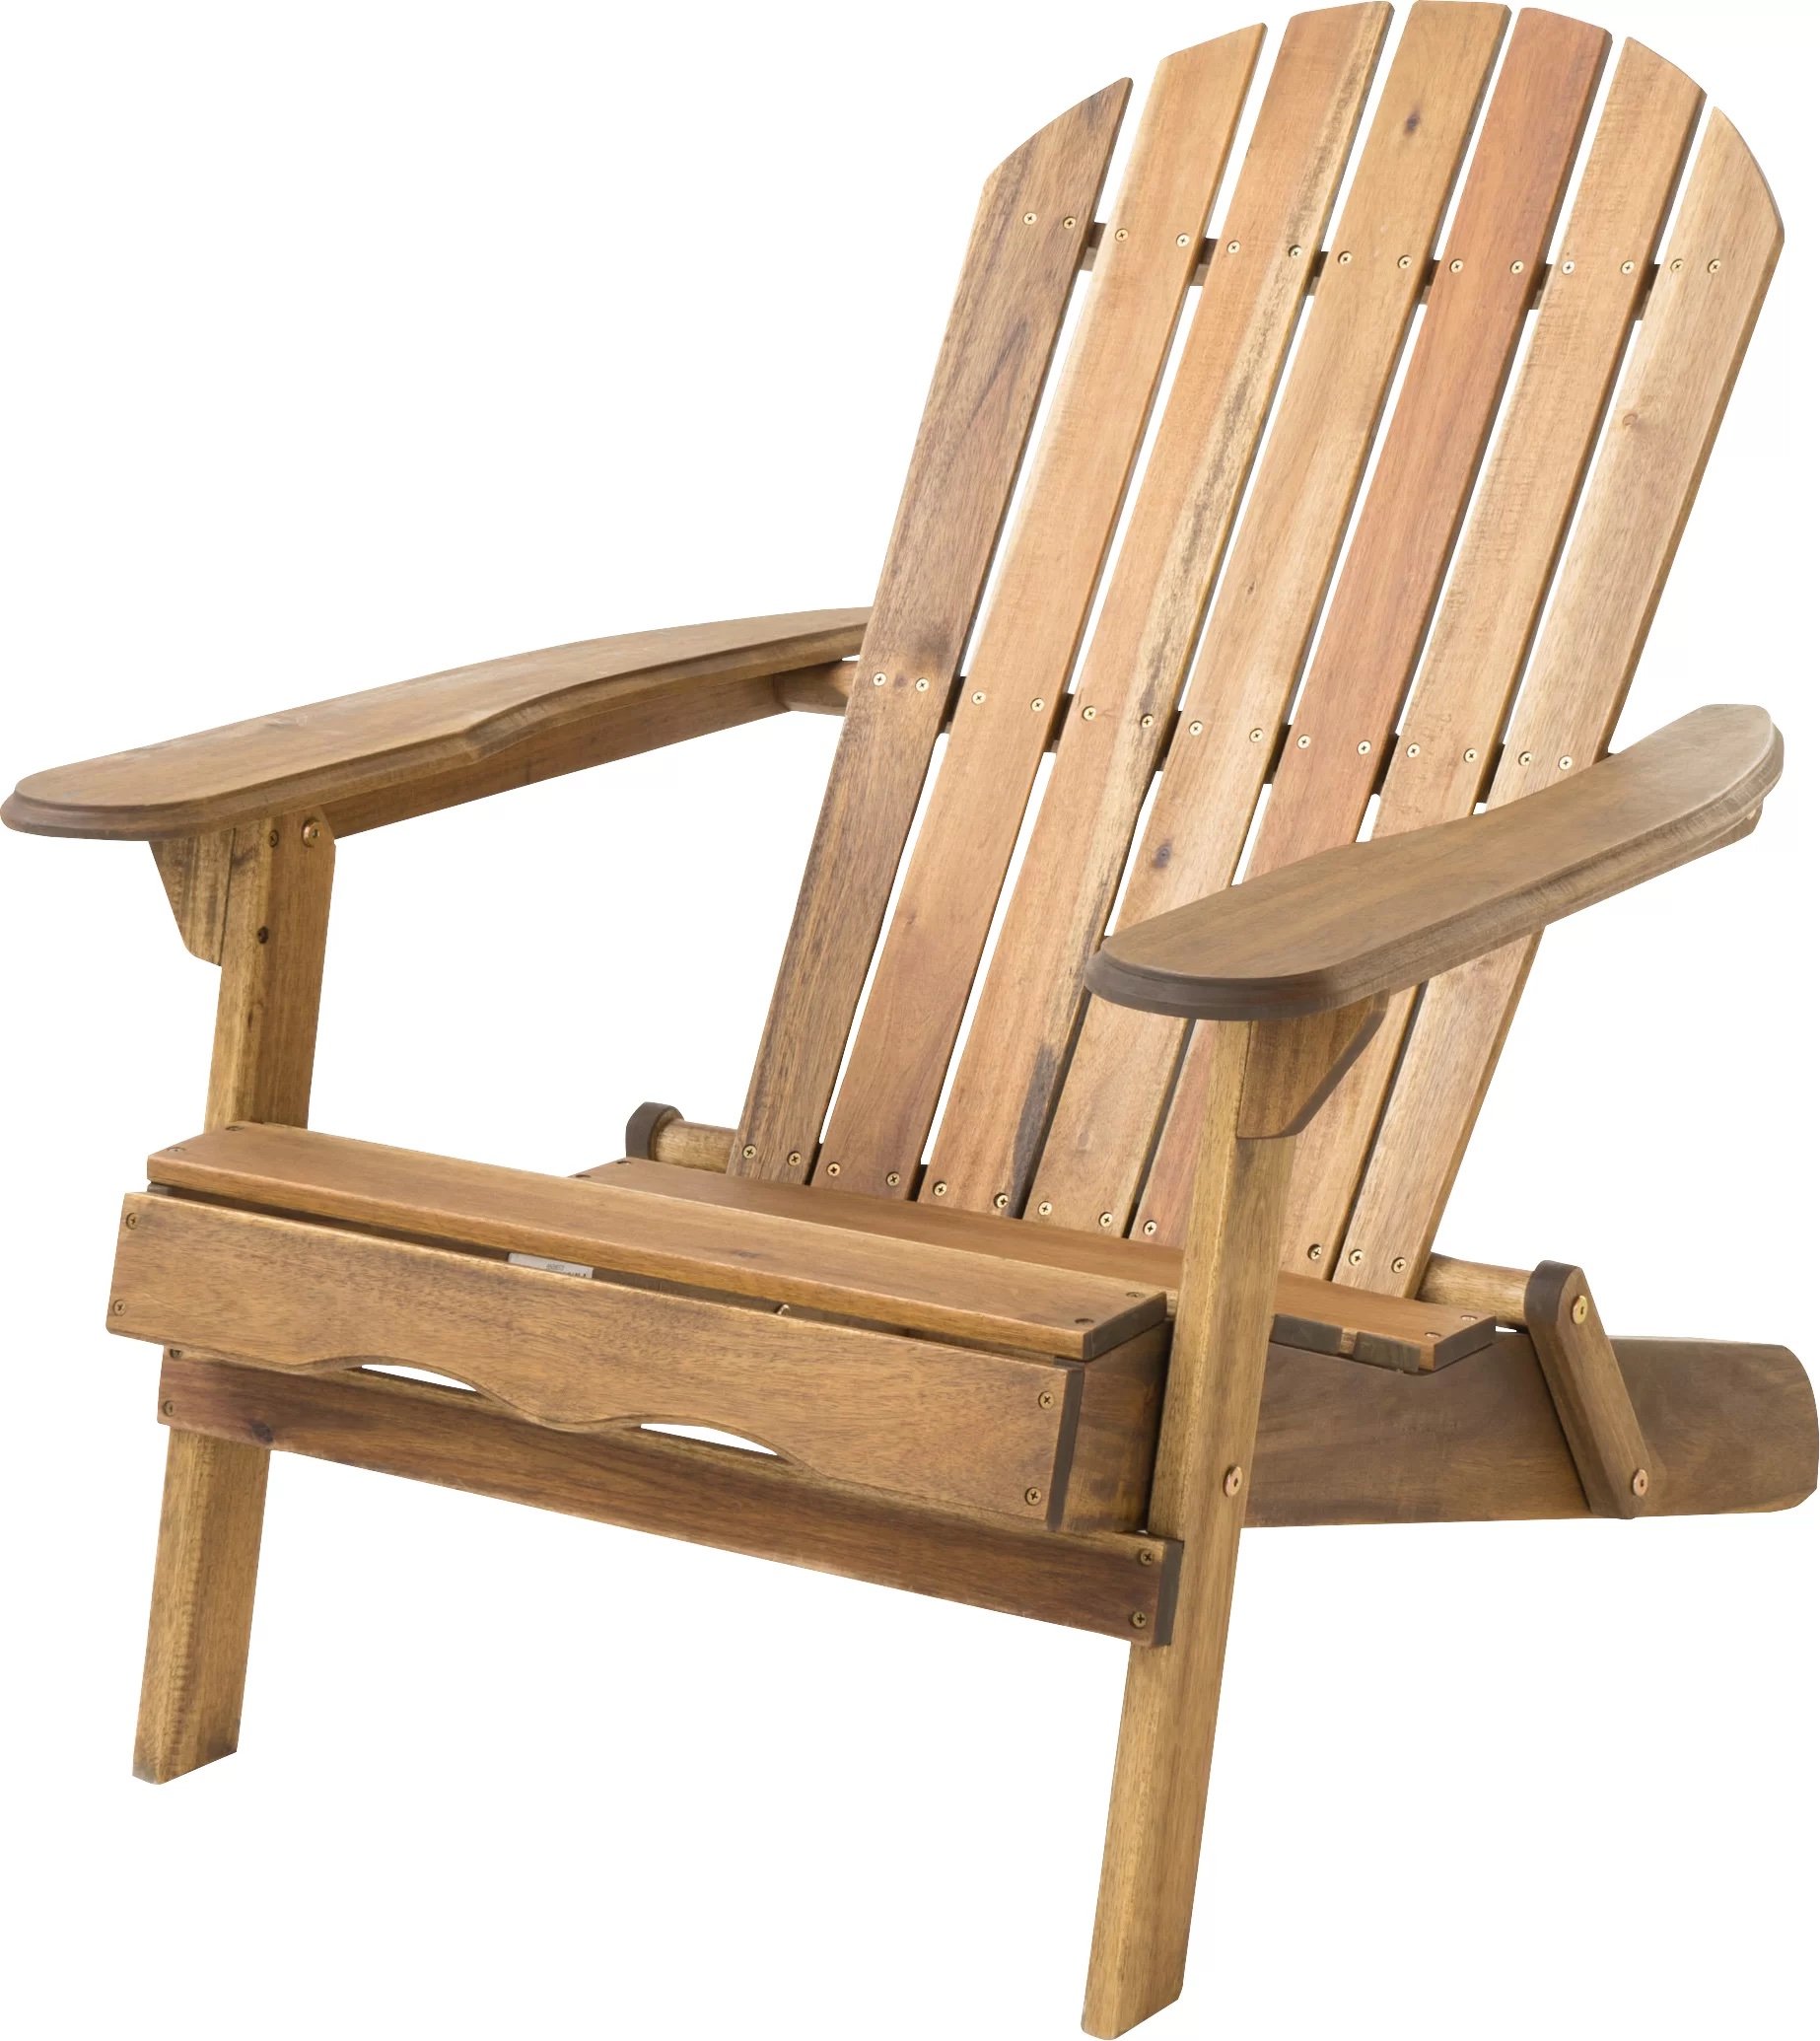 传统的木制阿迪朗达克椅子后腿折叠机制。